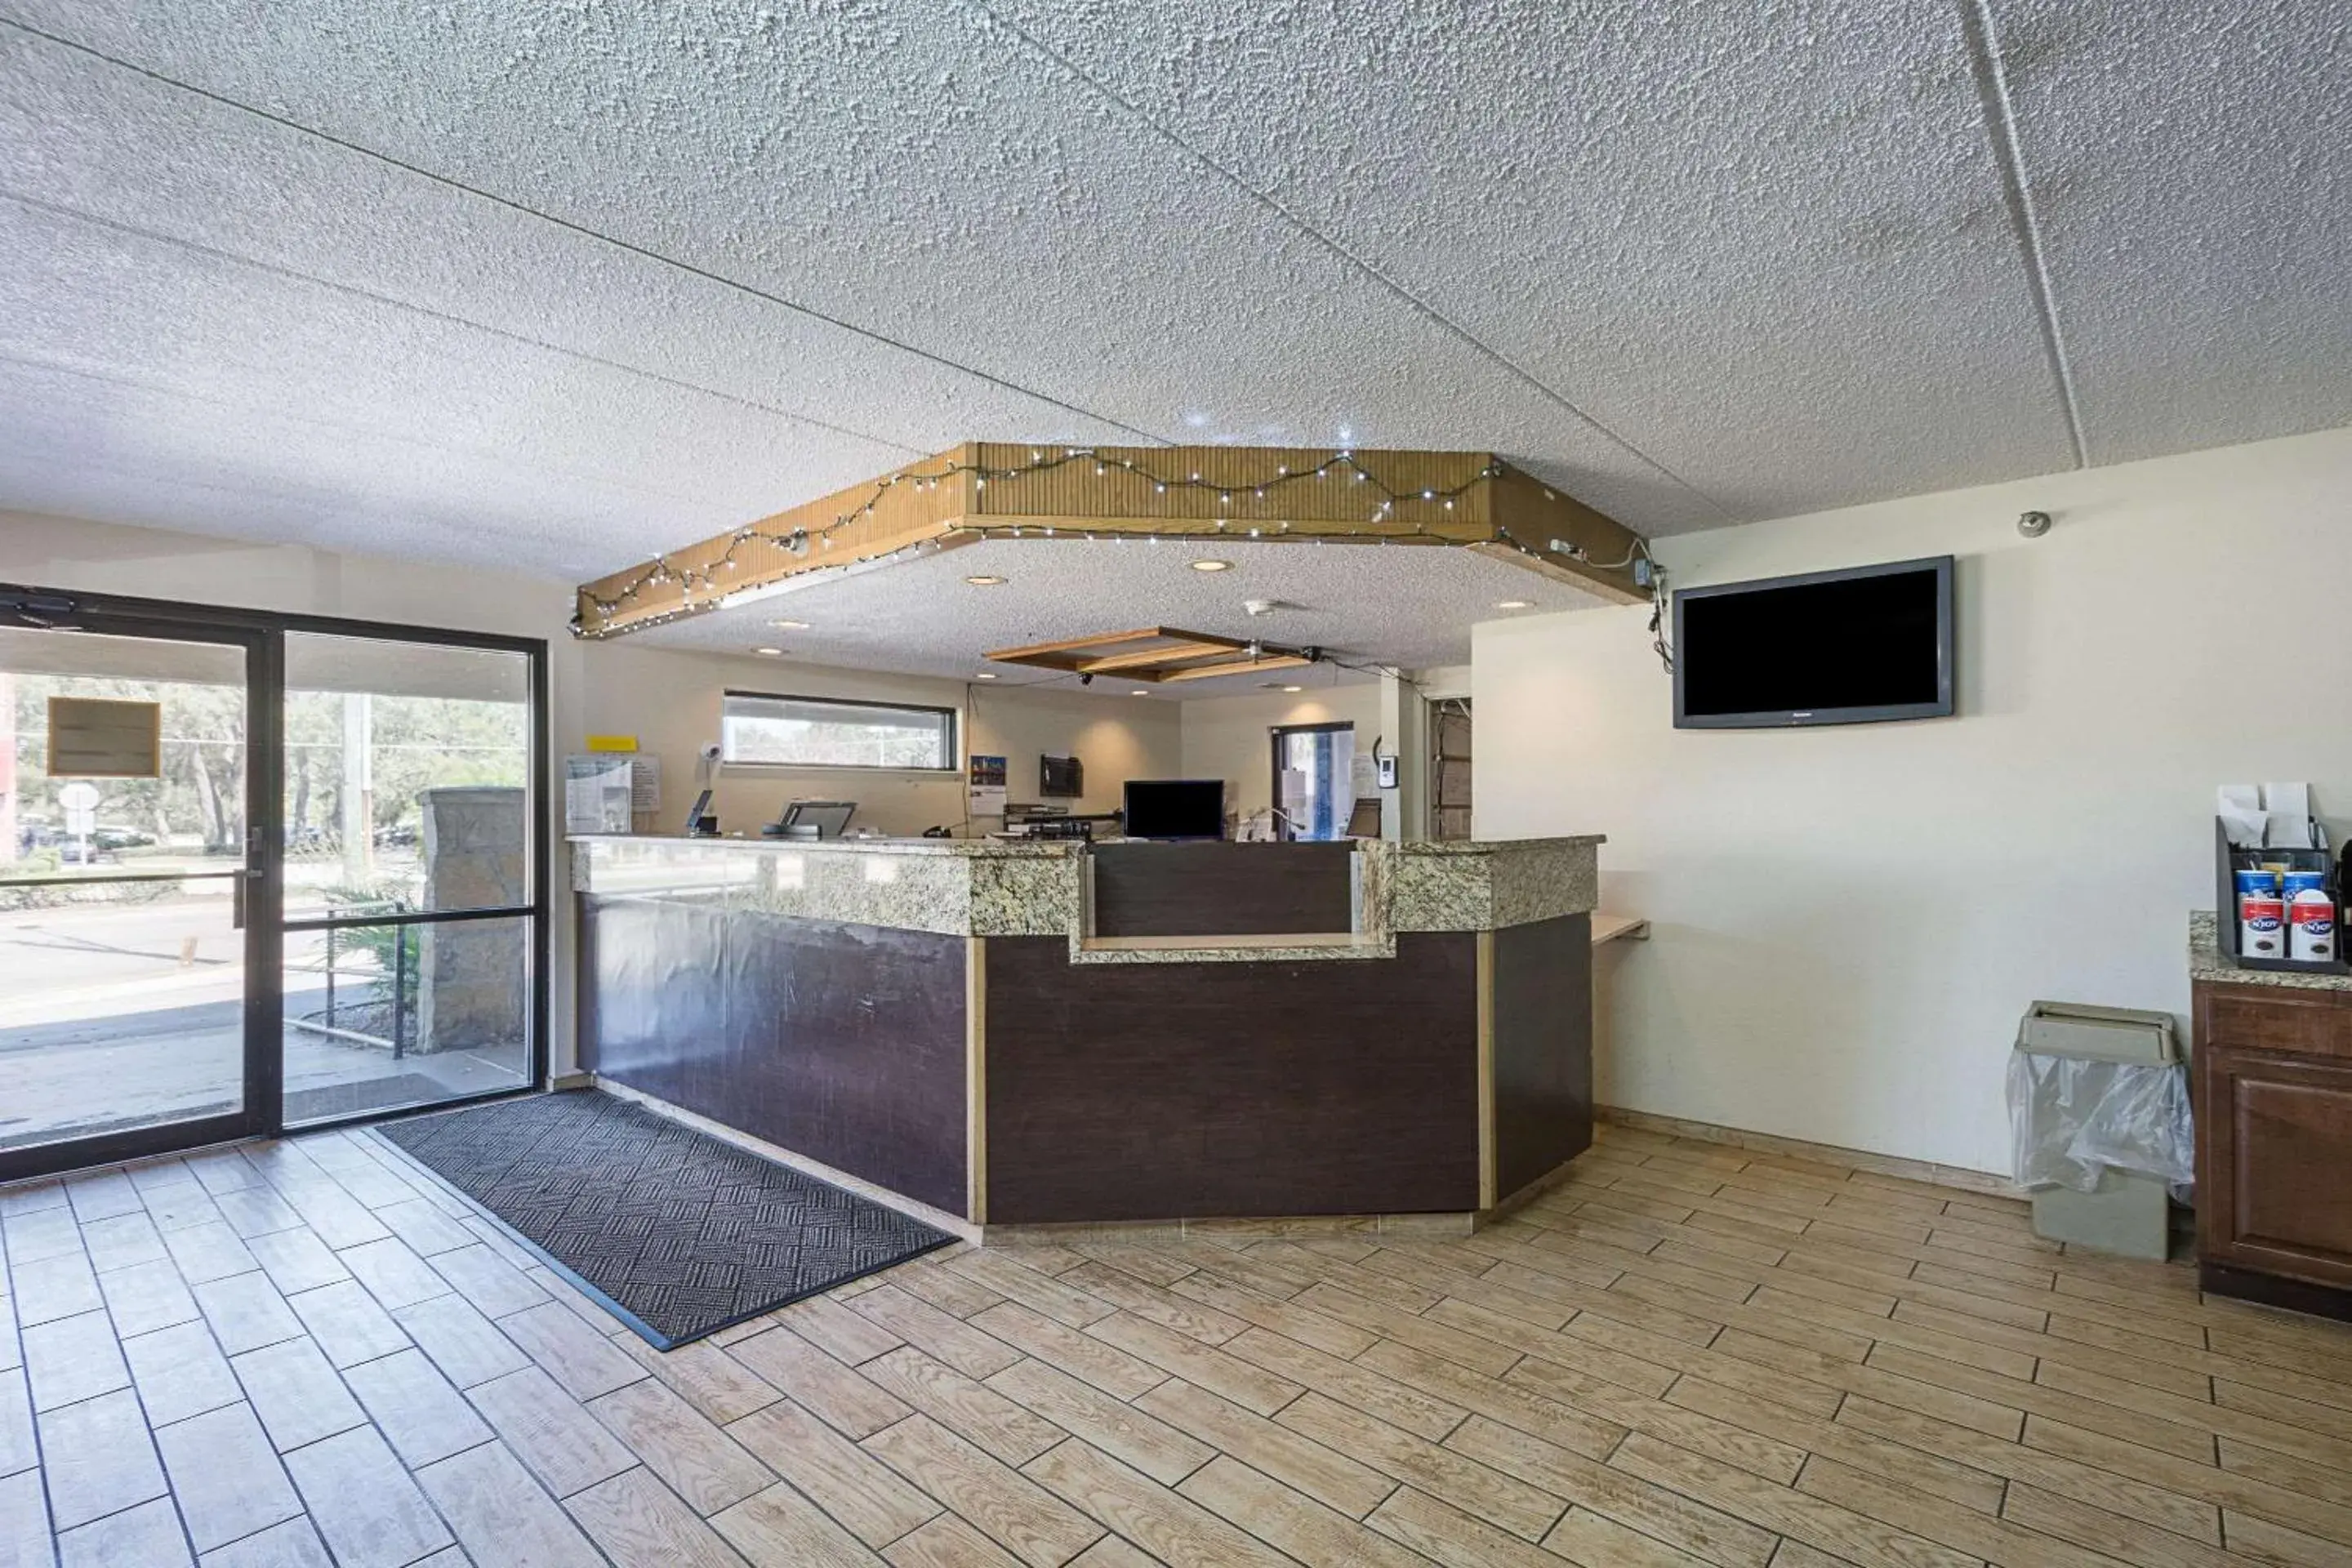 Lobby or reception, Lobby/Reception in Rodeway Inn Tampa near Busch Gardens-USF